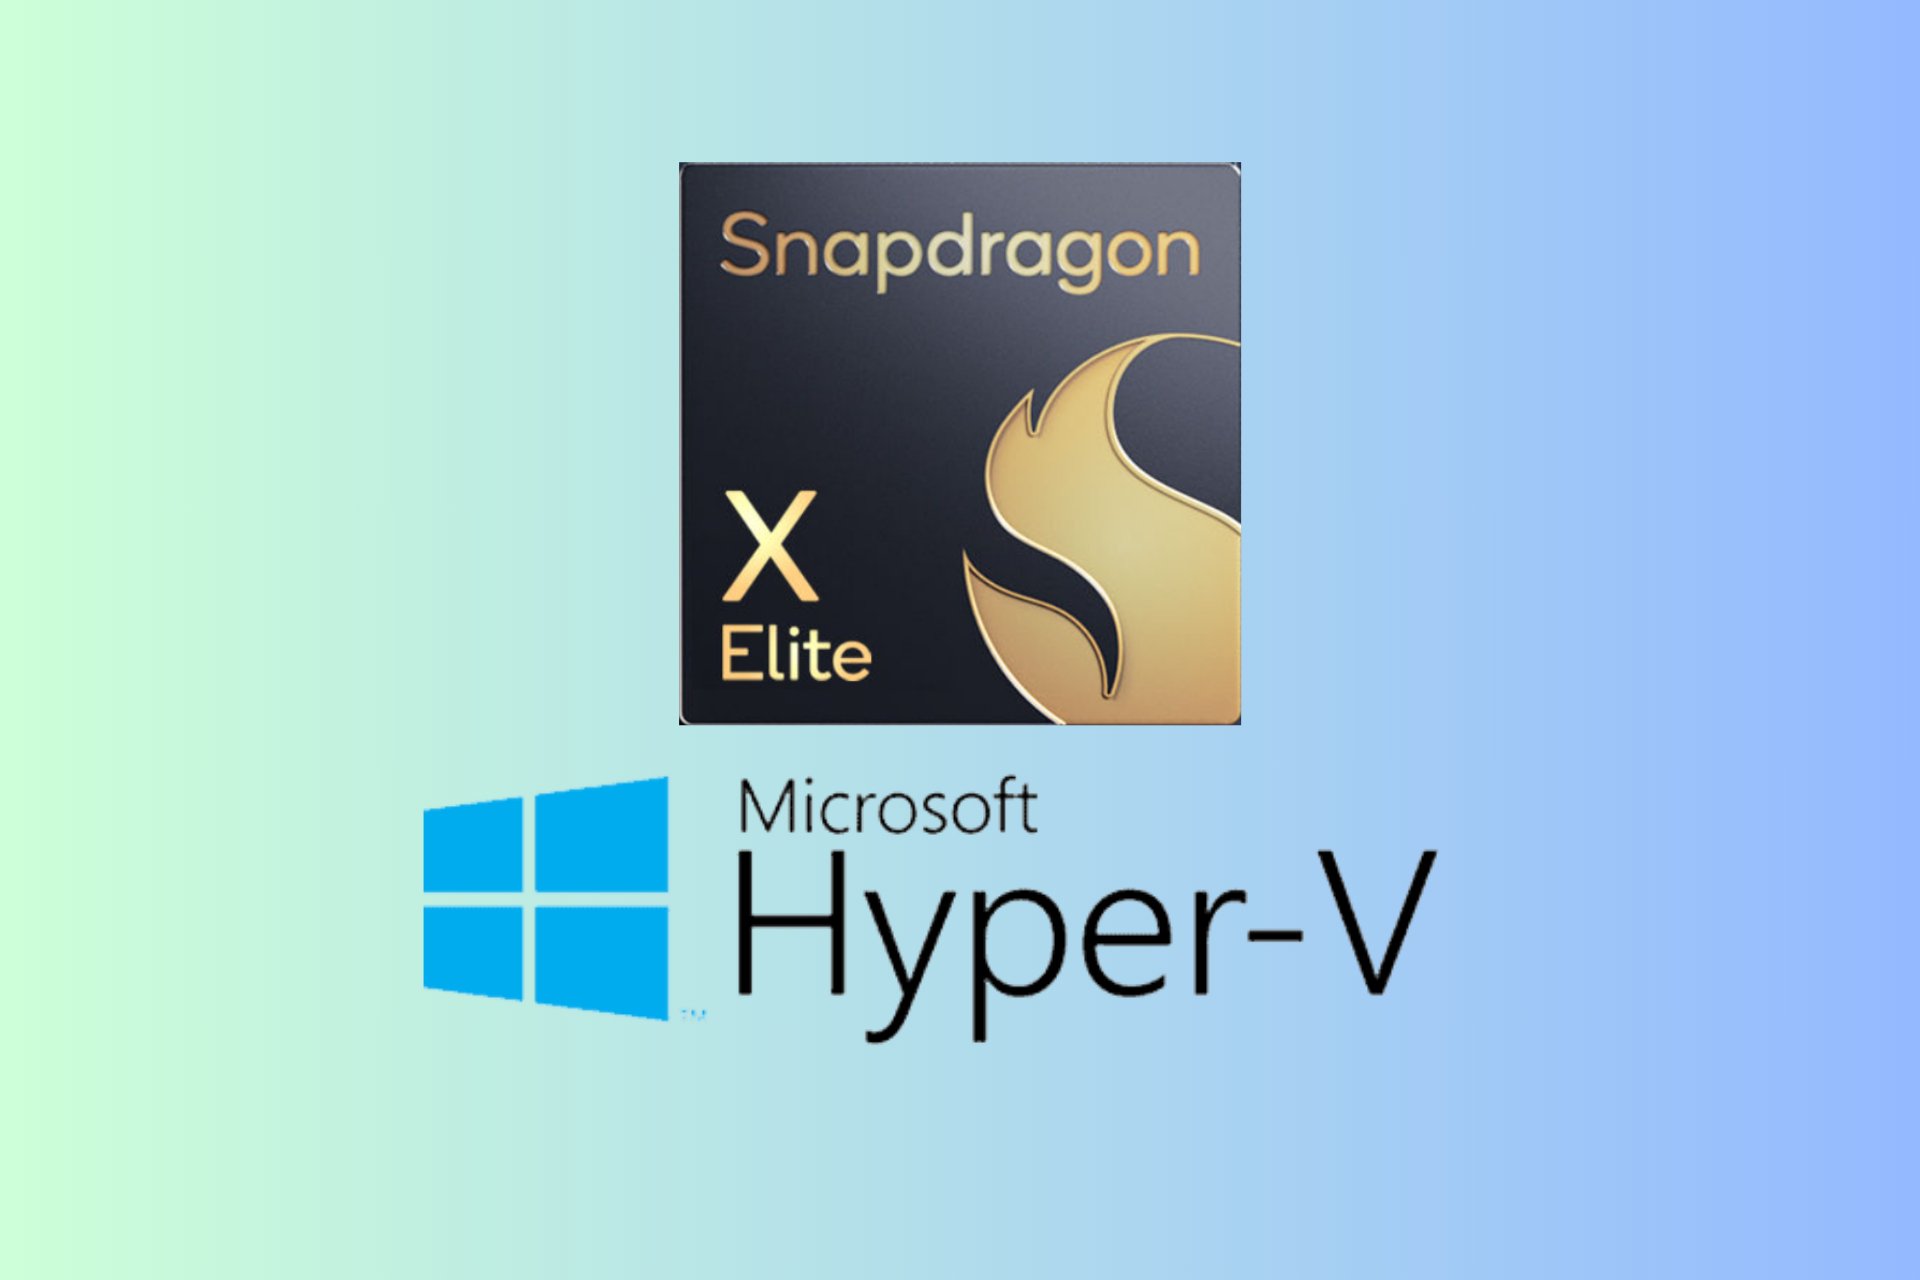 How to set up Hyper-V on Snapdragon X Elite laptop